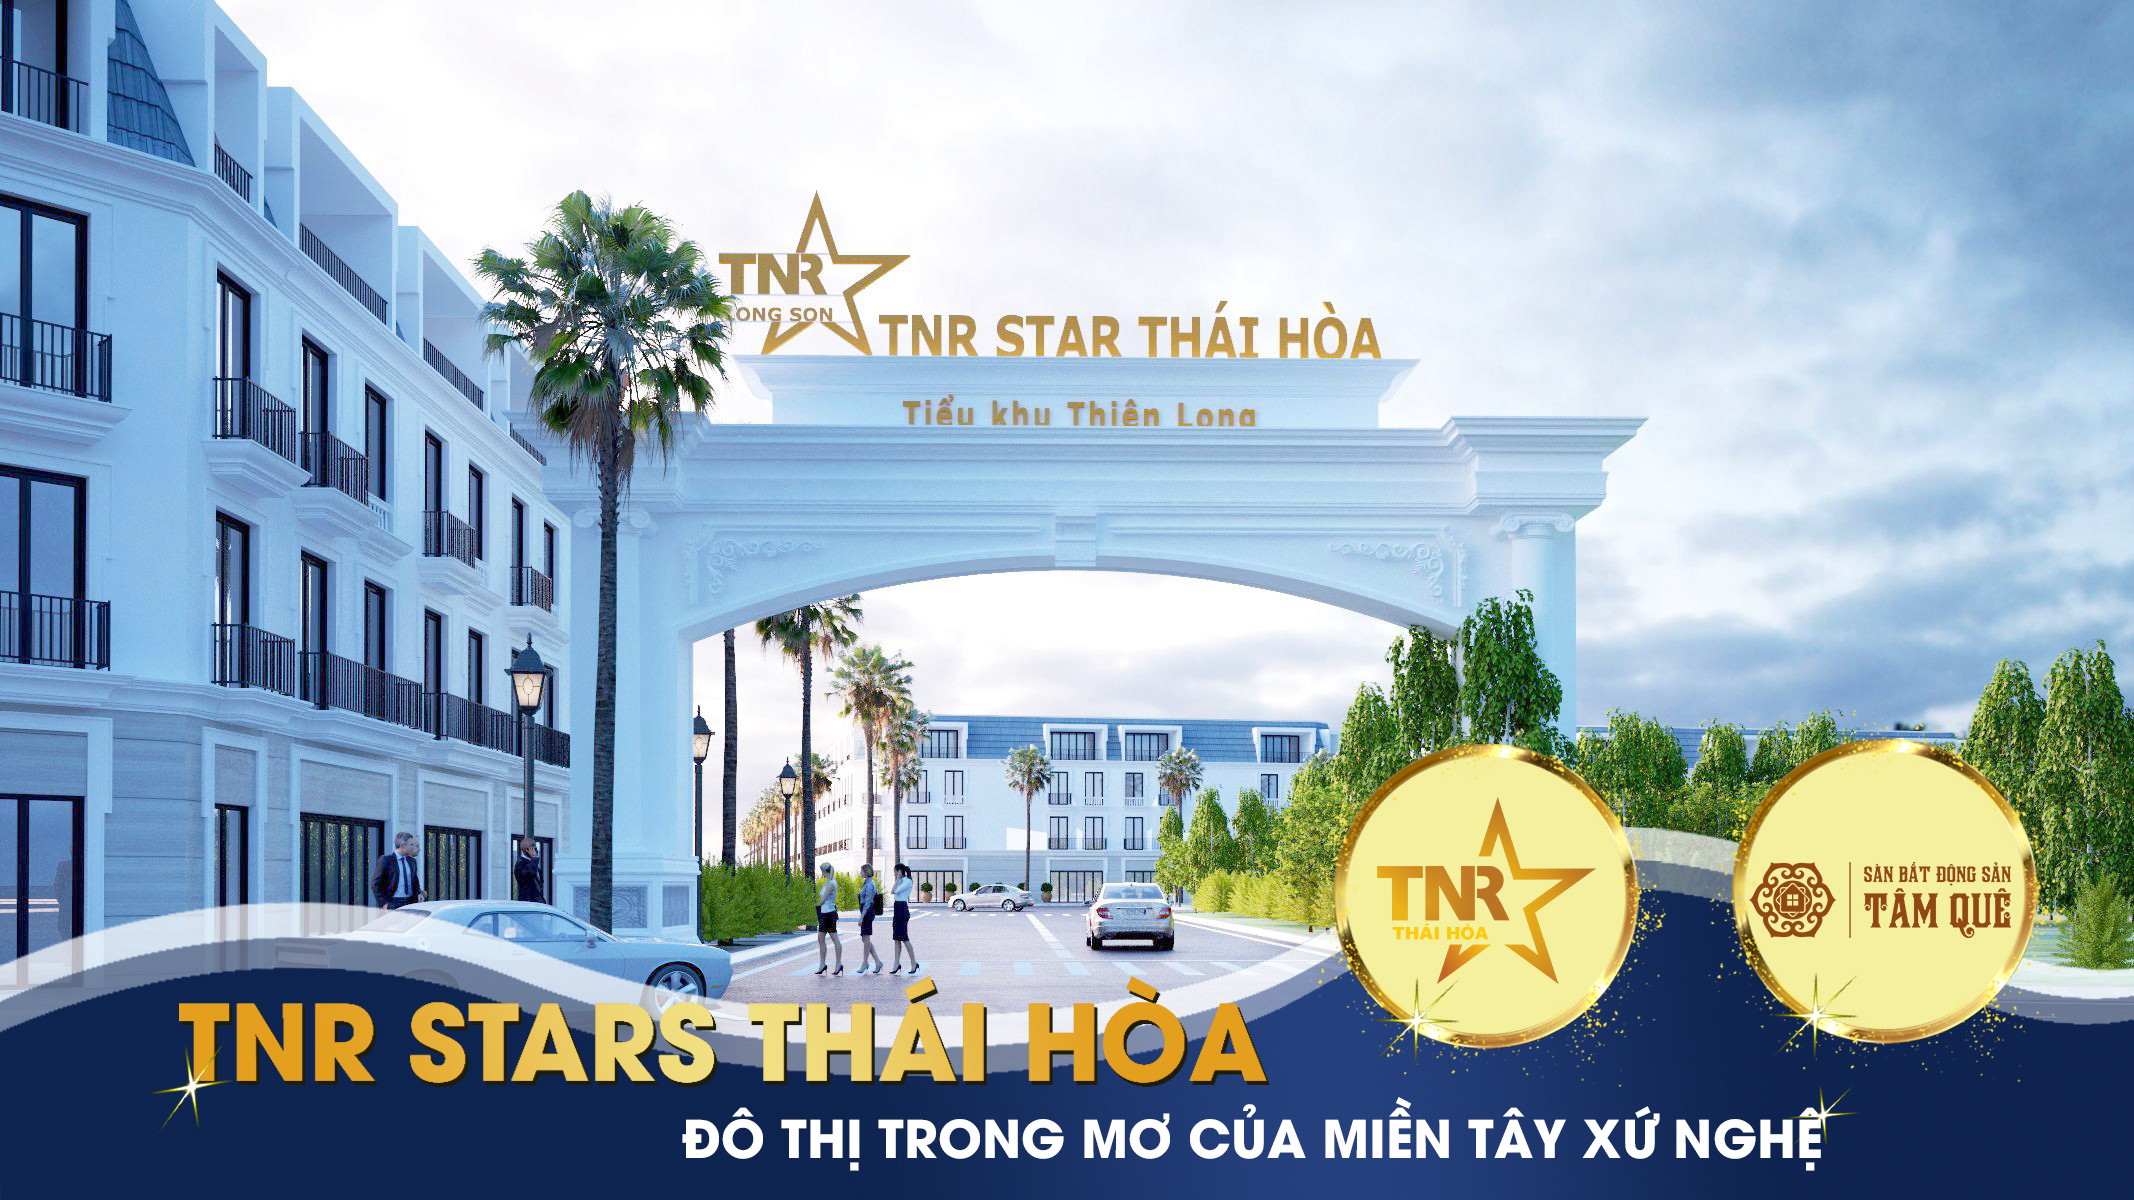 Phối cảnh TNR stars Thái Hòa 